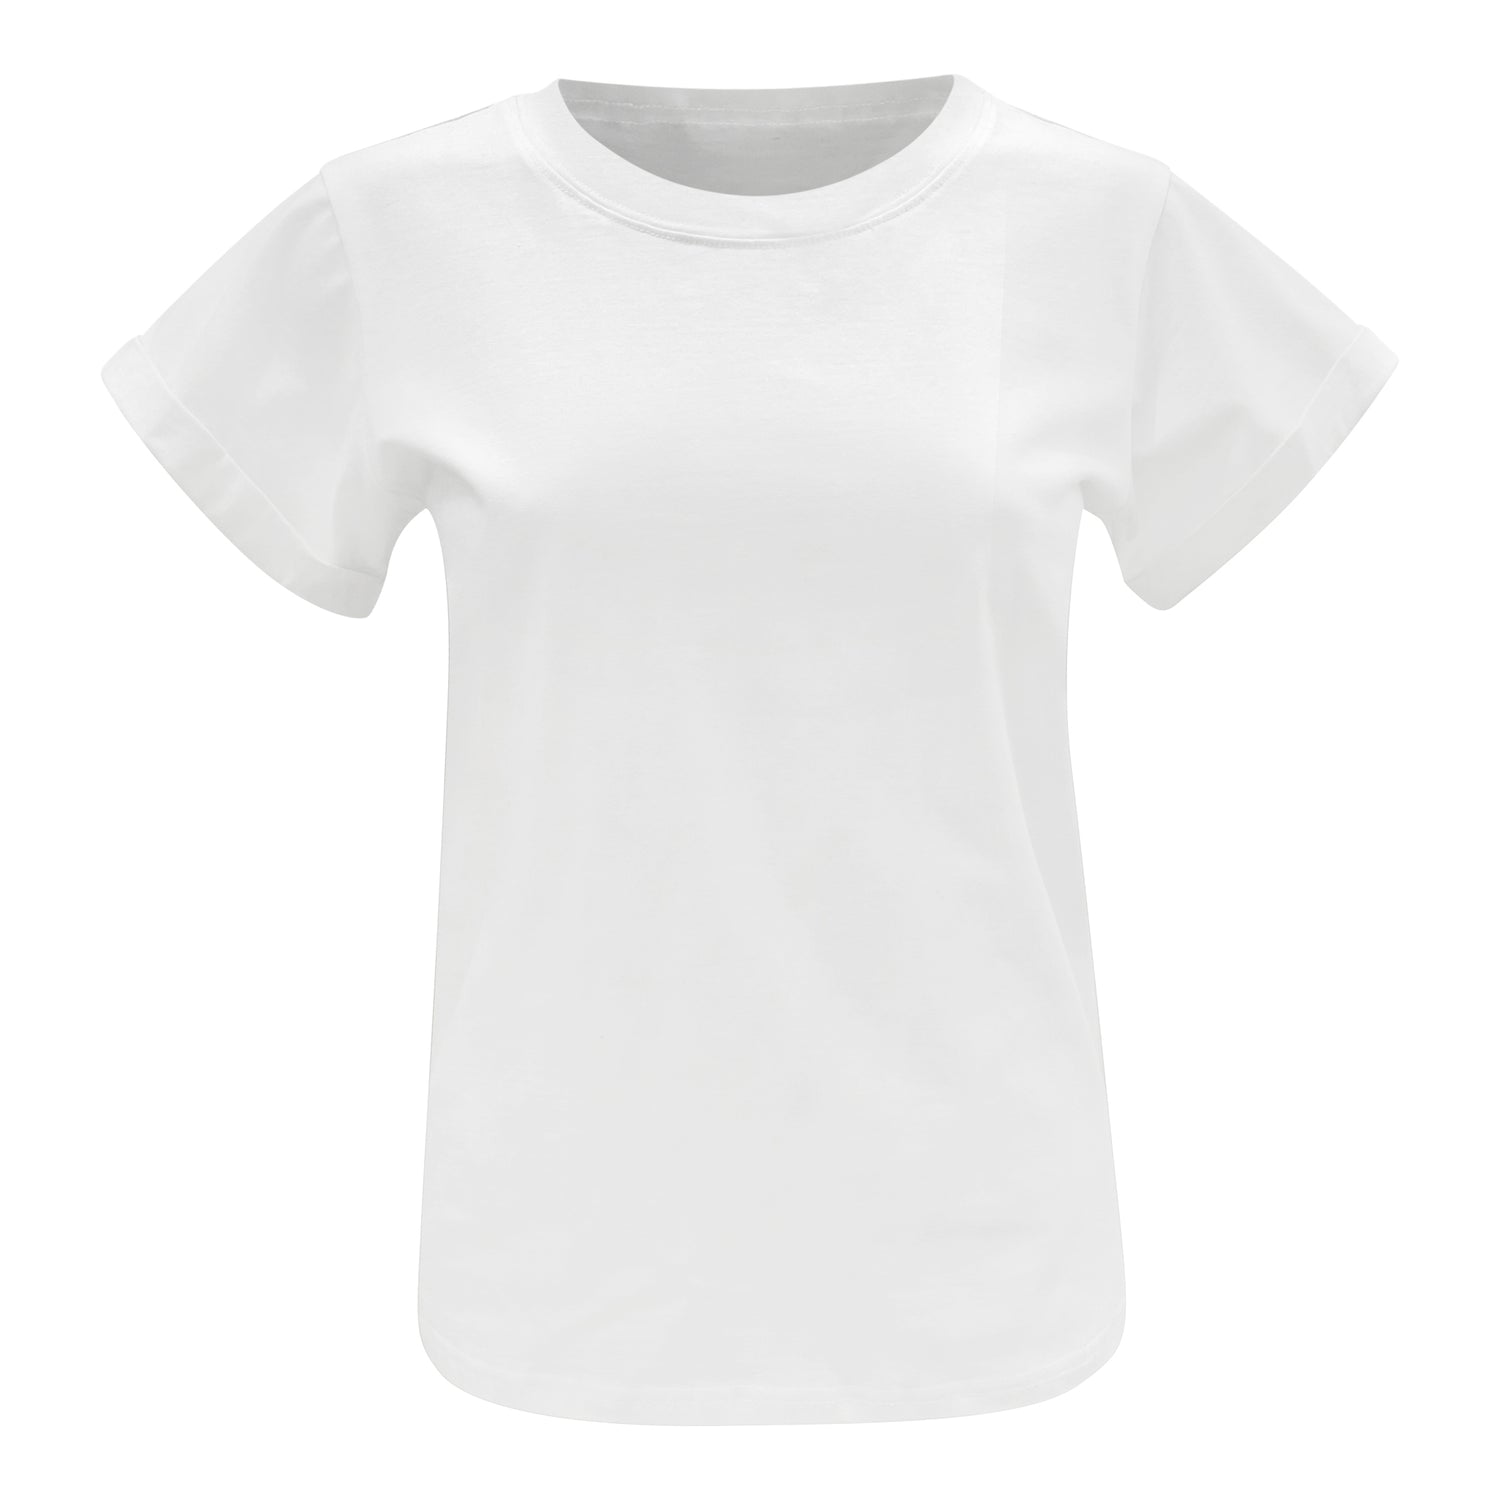 capri cotton tshirt